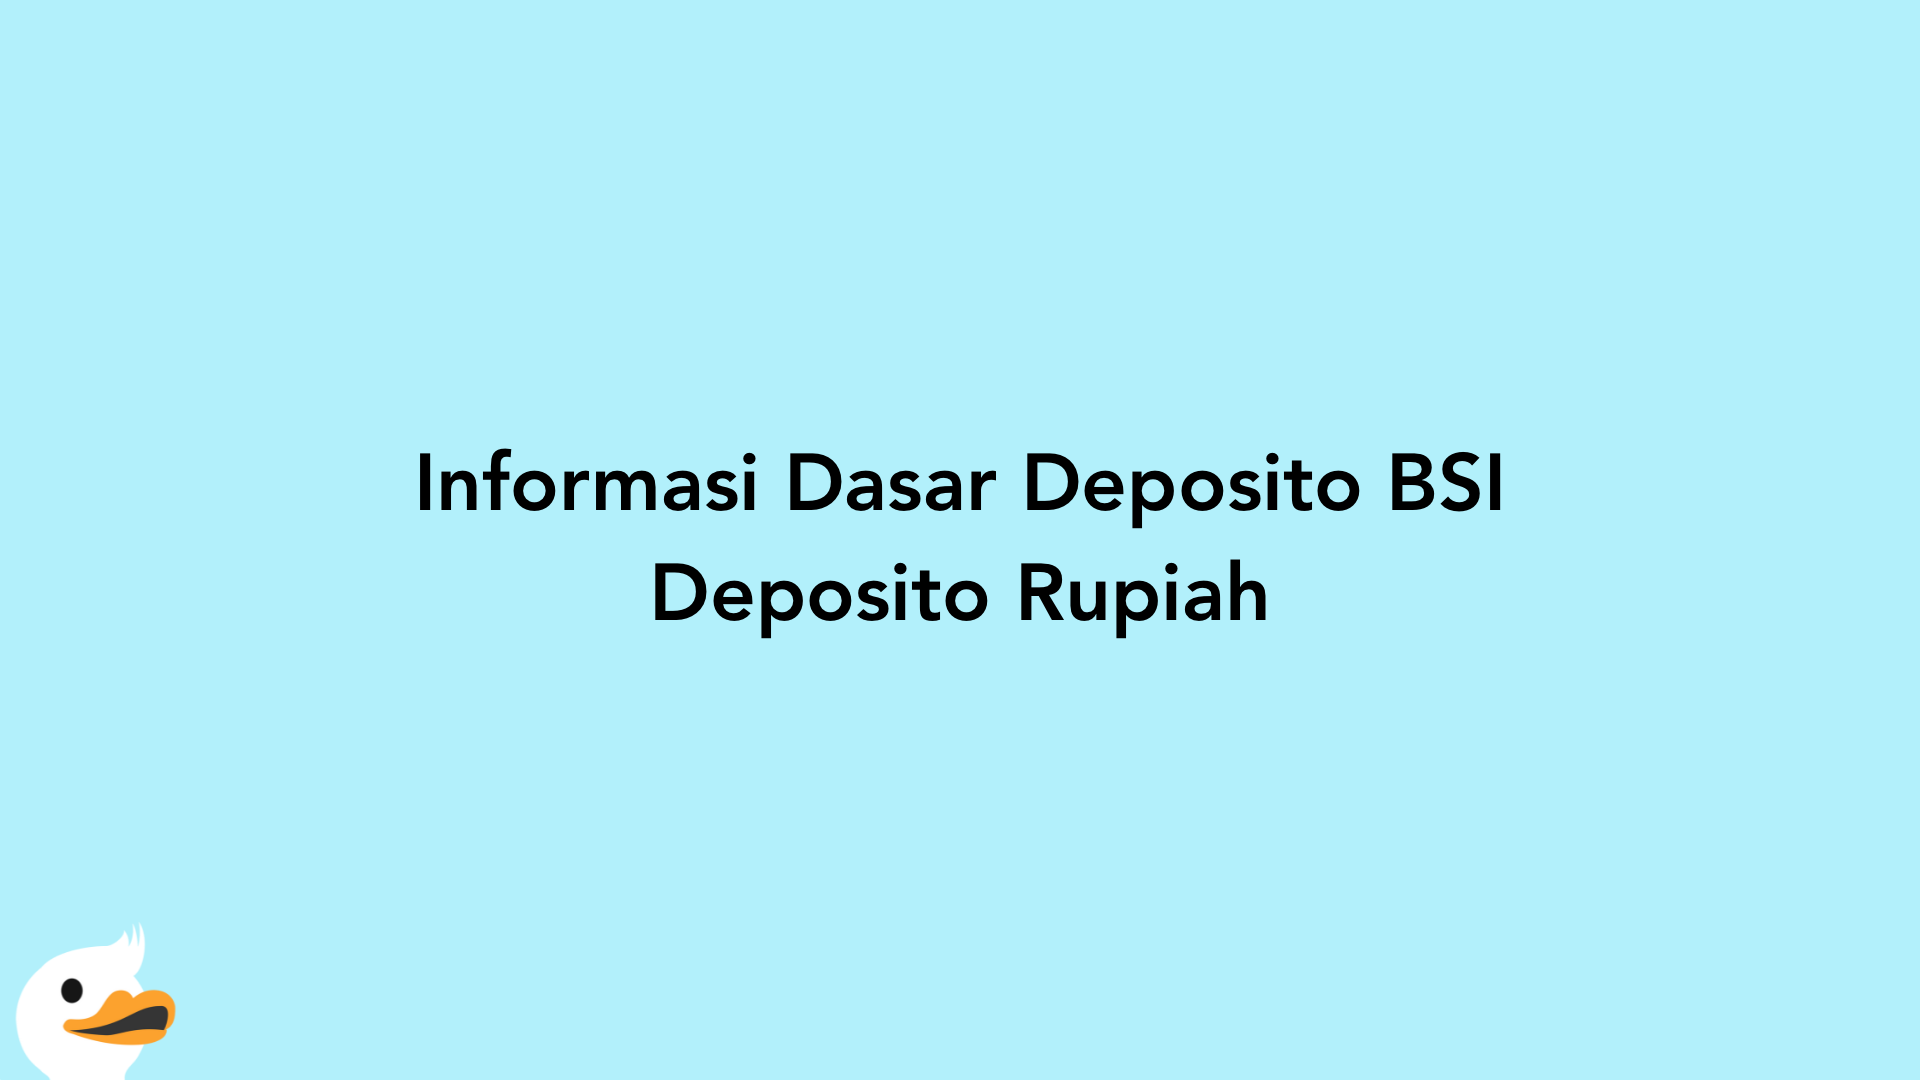 Informasi Dasar Deposito BSI Deposito Rupiah